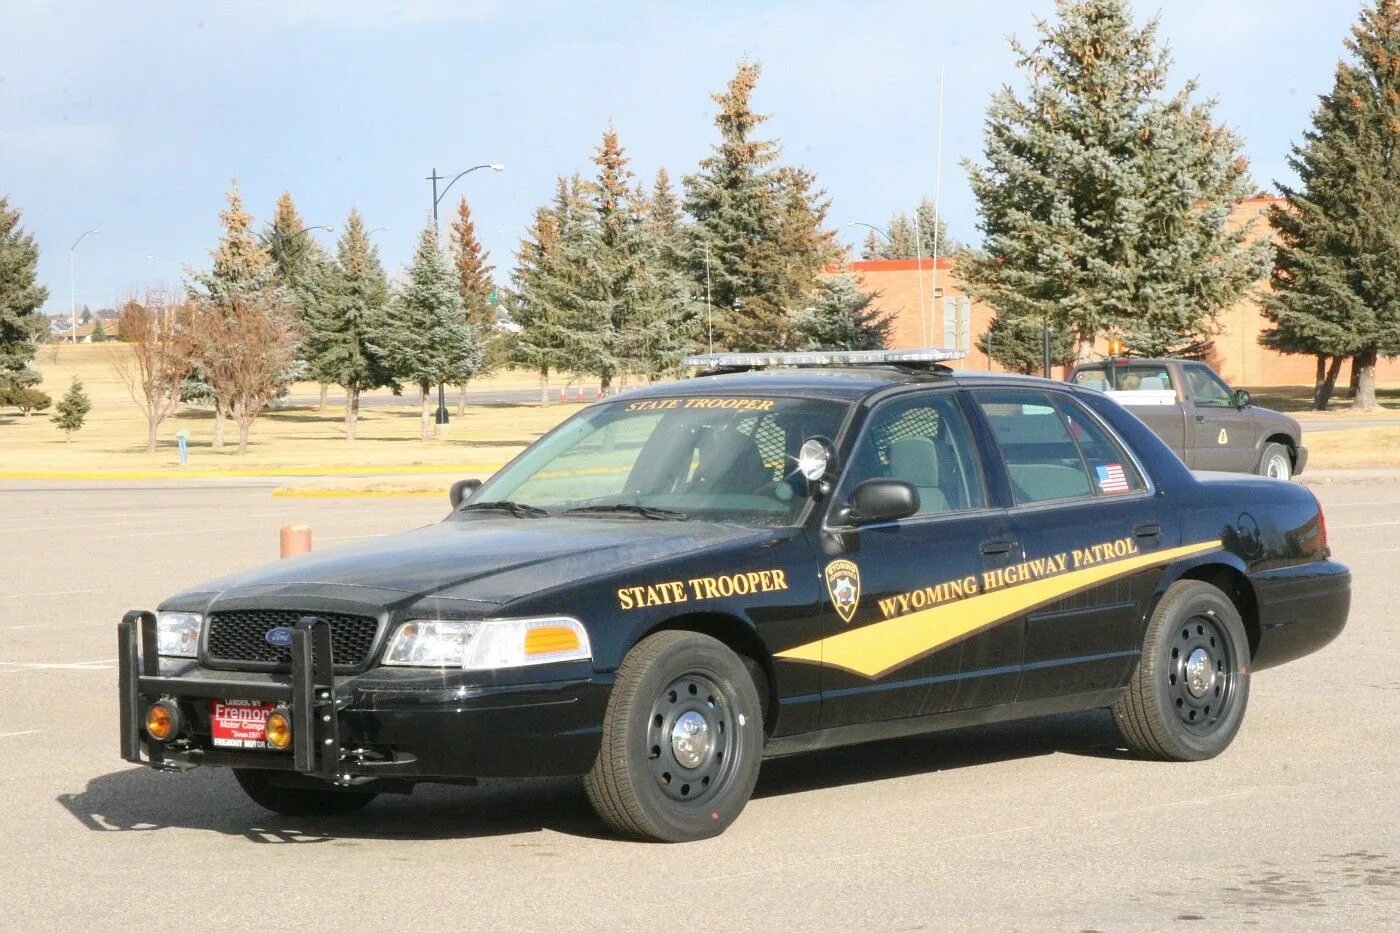 State Trooper Ford Crown. Montana Police Форд Краун. Wyoming Highway Patrol. Ford Crown California Highway Patrol.